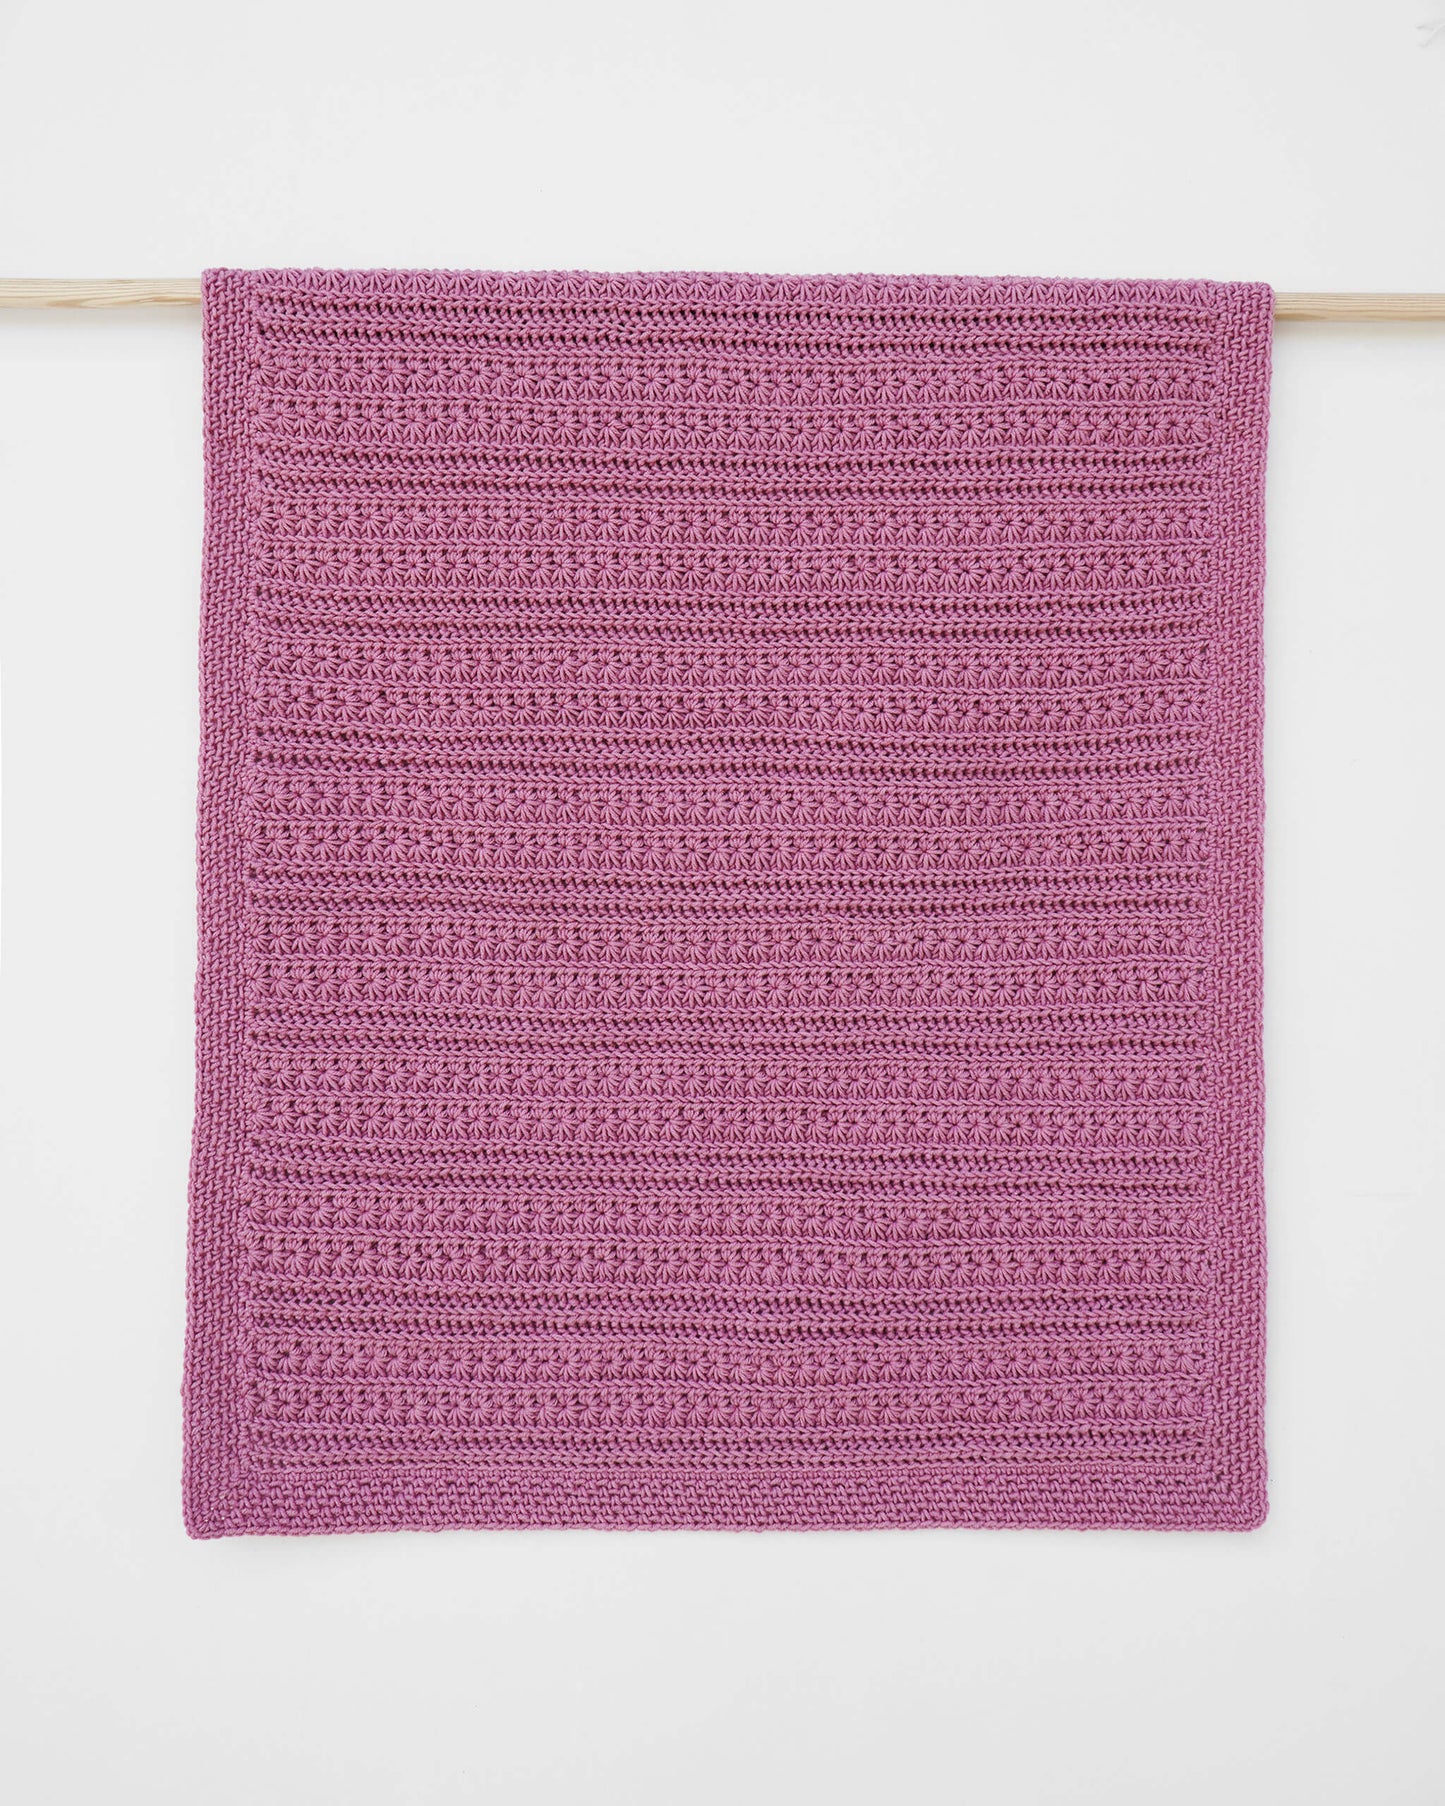 Blanket No.1 - Easy crochet pattern